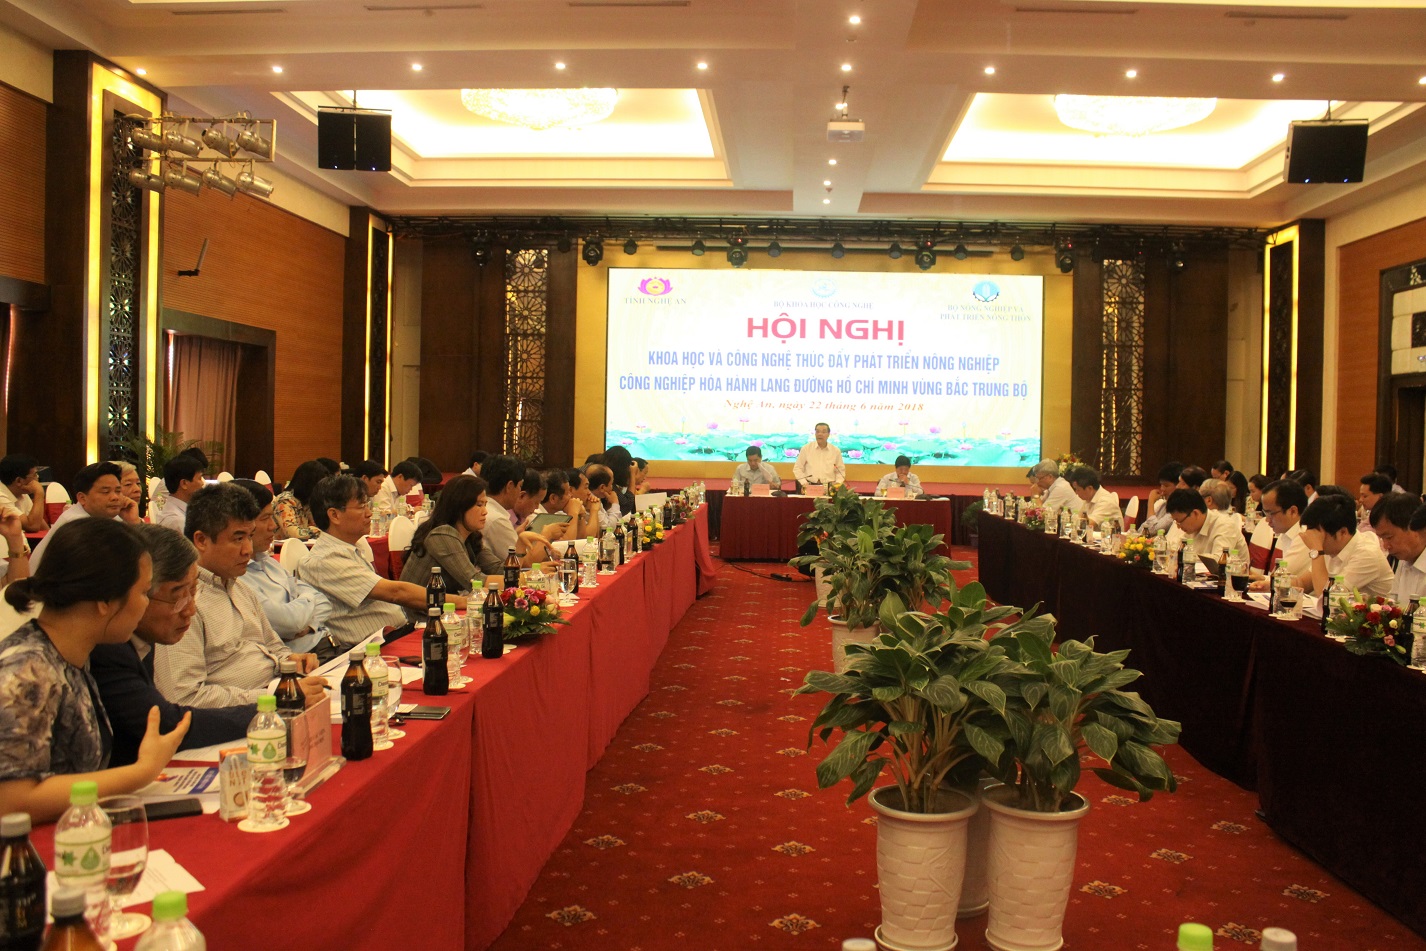 Toàn cảnh Hội nghị KH&CN thúc đẩy phát triển nông nghiệp công nghiệp hóa hành lang đường Hồ Chí Minh vùng Bắc Trung Bộ. Ảnh: TTTT Khoa học Công nghệ